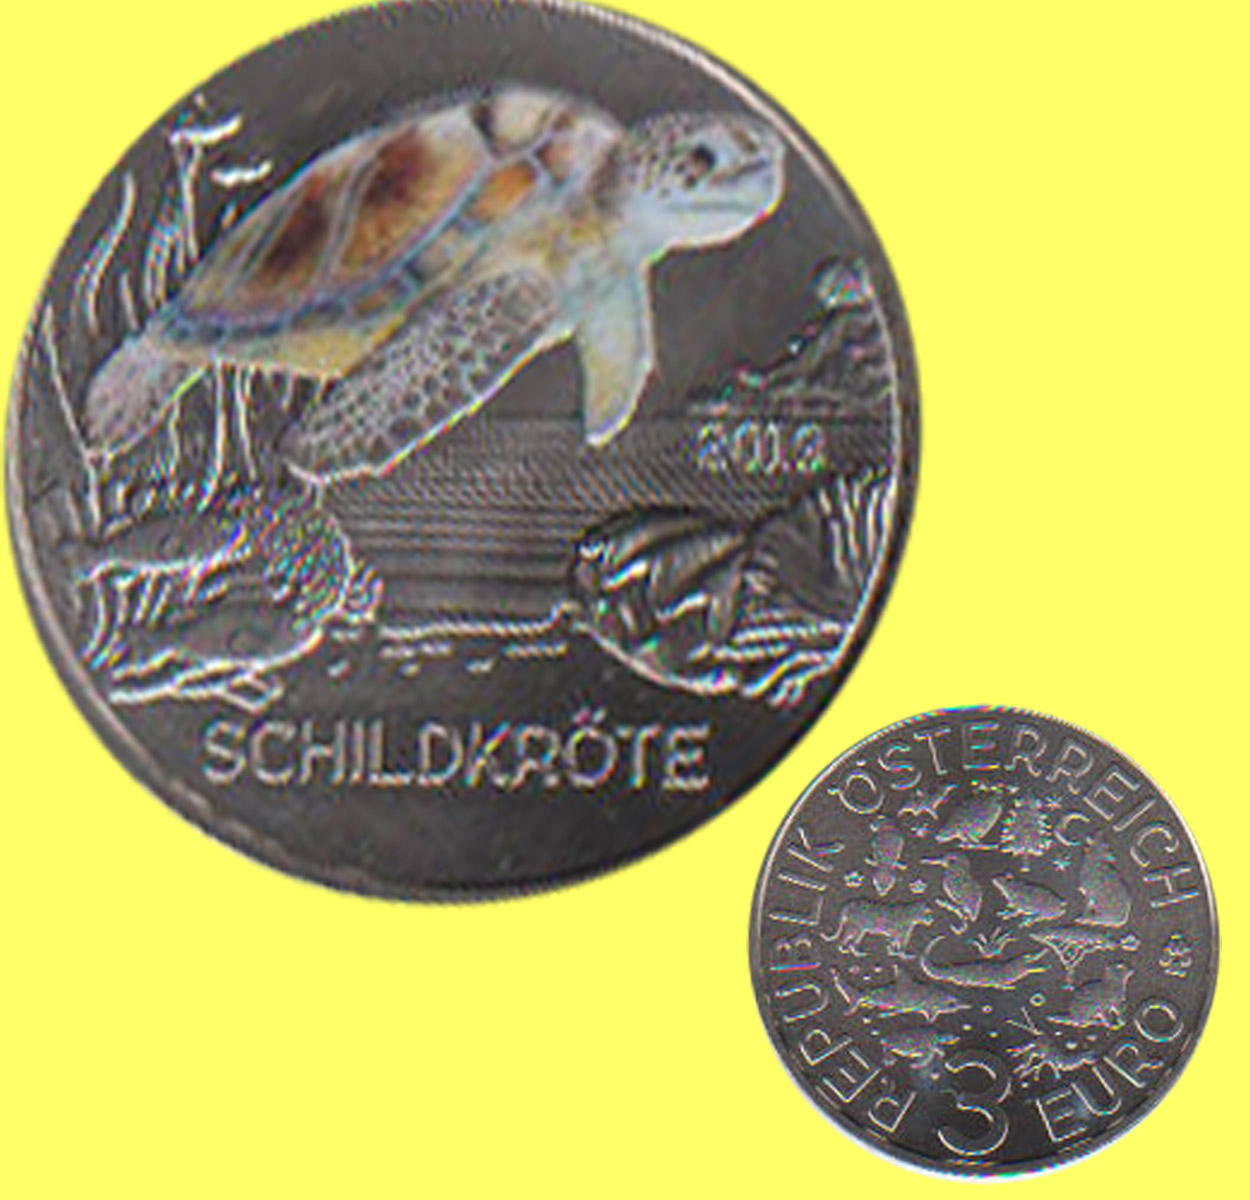  Offiz. 3 Euro-Farbmünze Österreich *Tiertaler - Schildkröte* 2019 Nachtaktive Münzen   